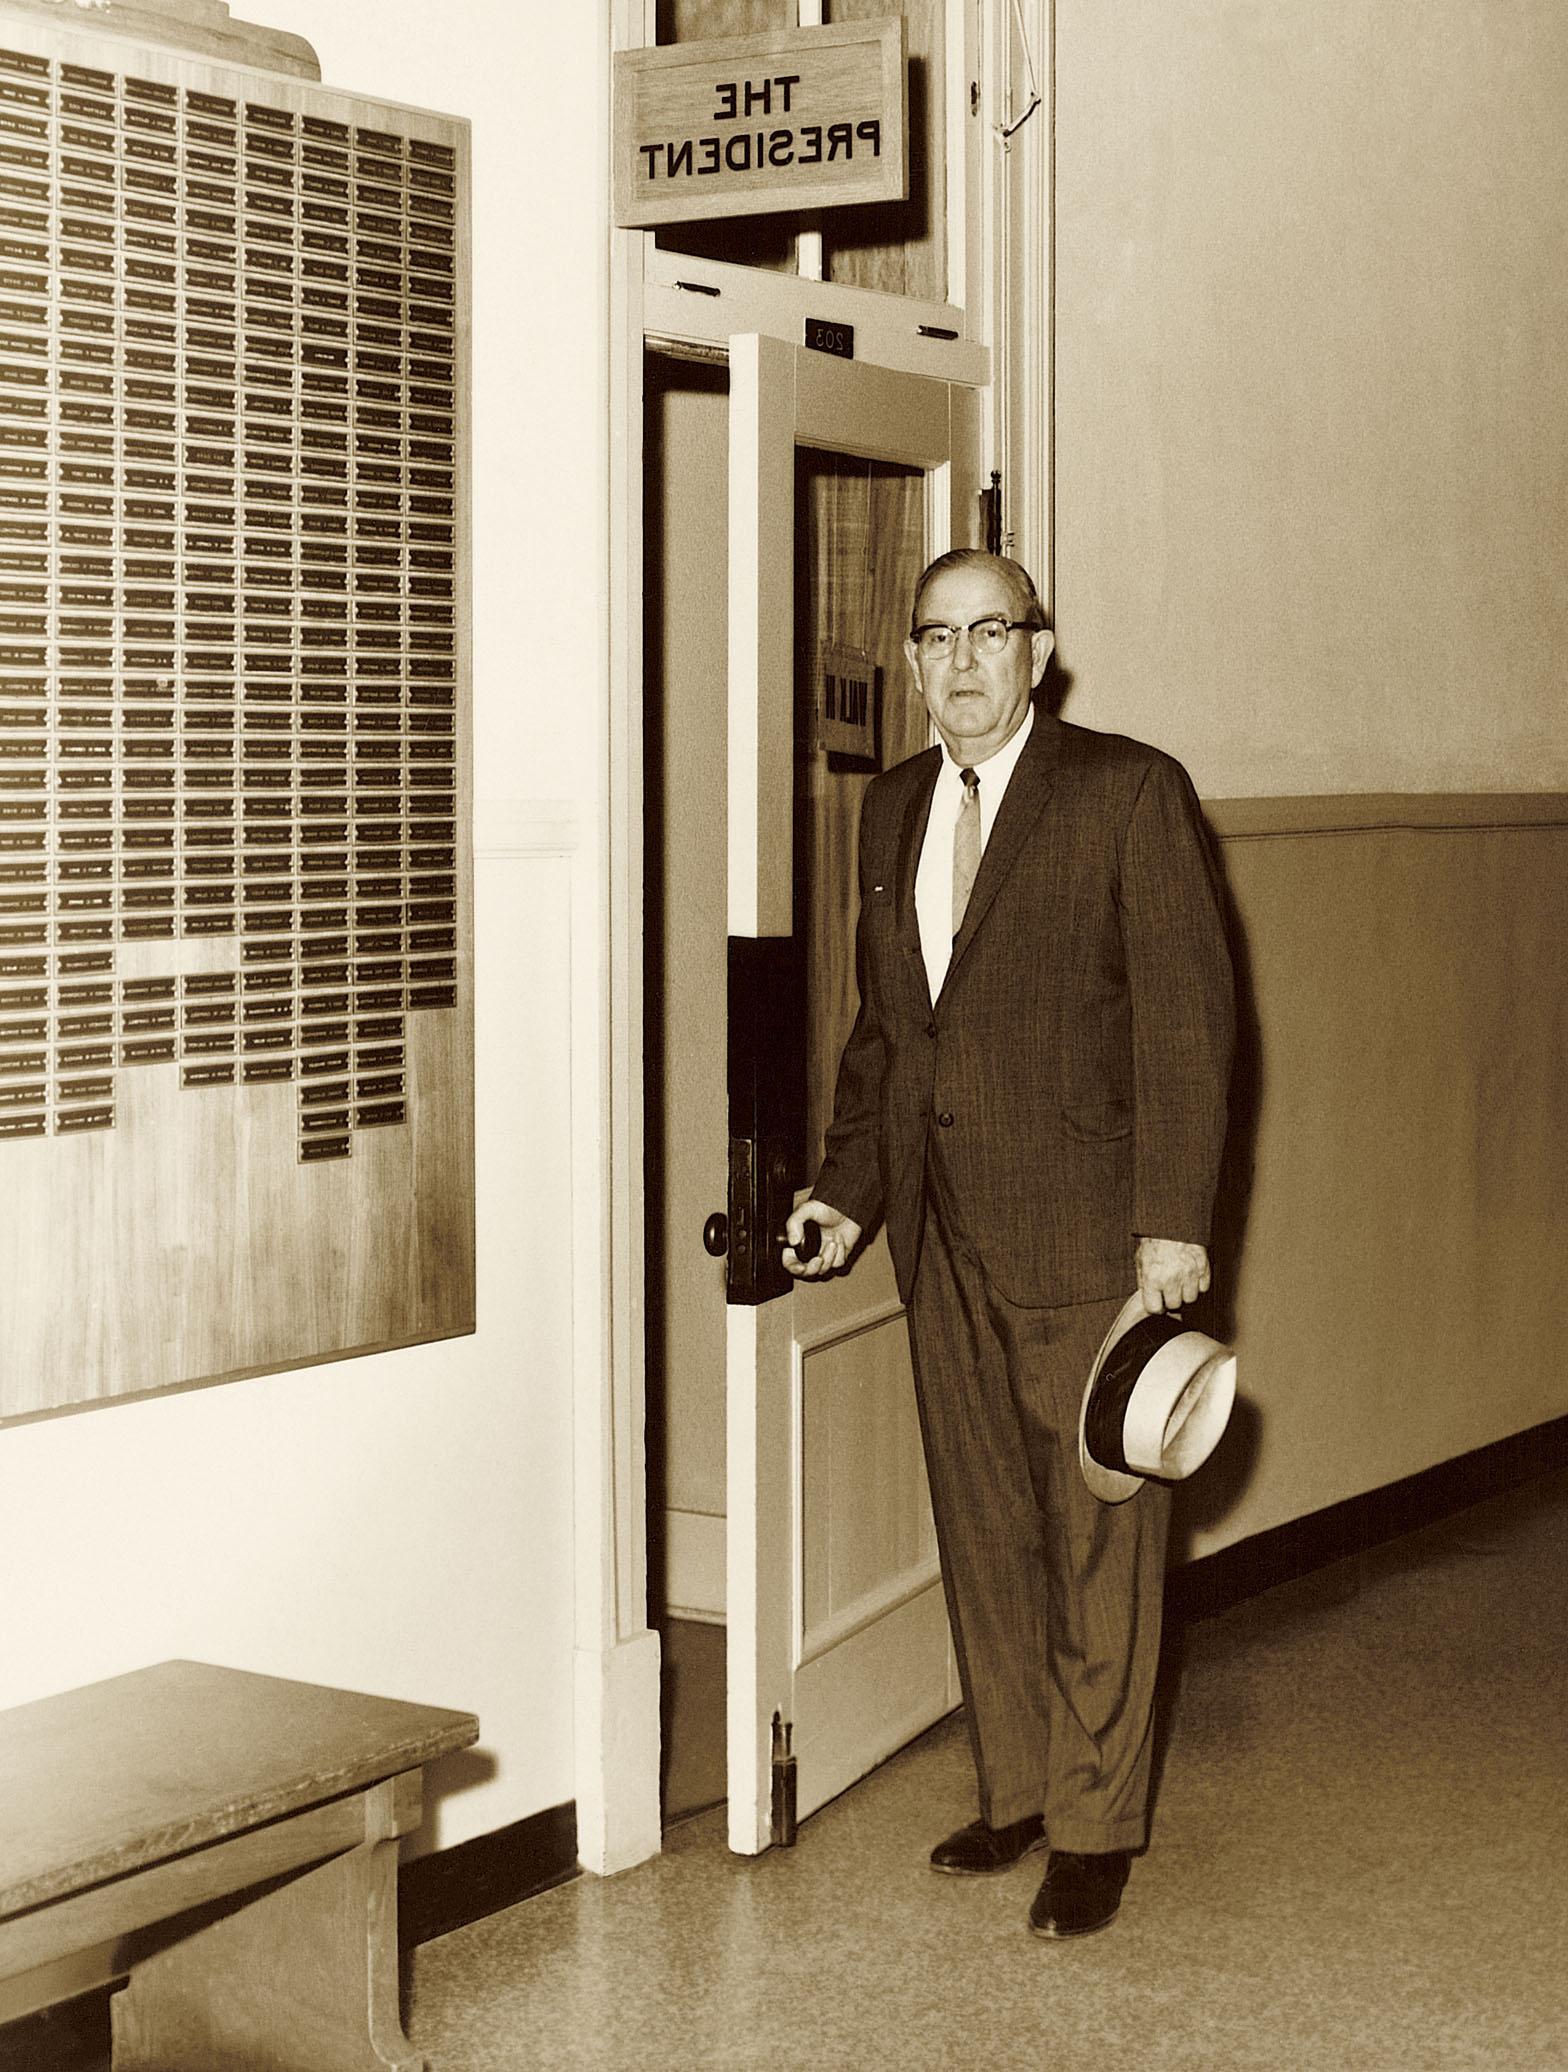 J.W. 琼斯站在总统办公室外面, 它当时位于行政大楼的二楼. 